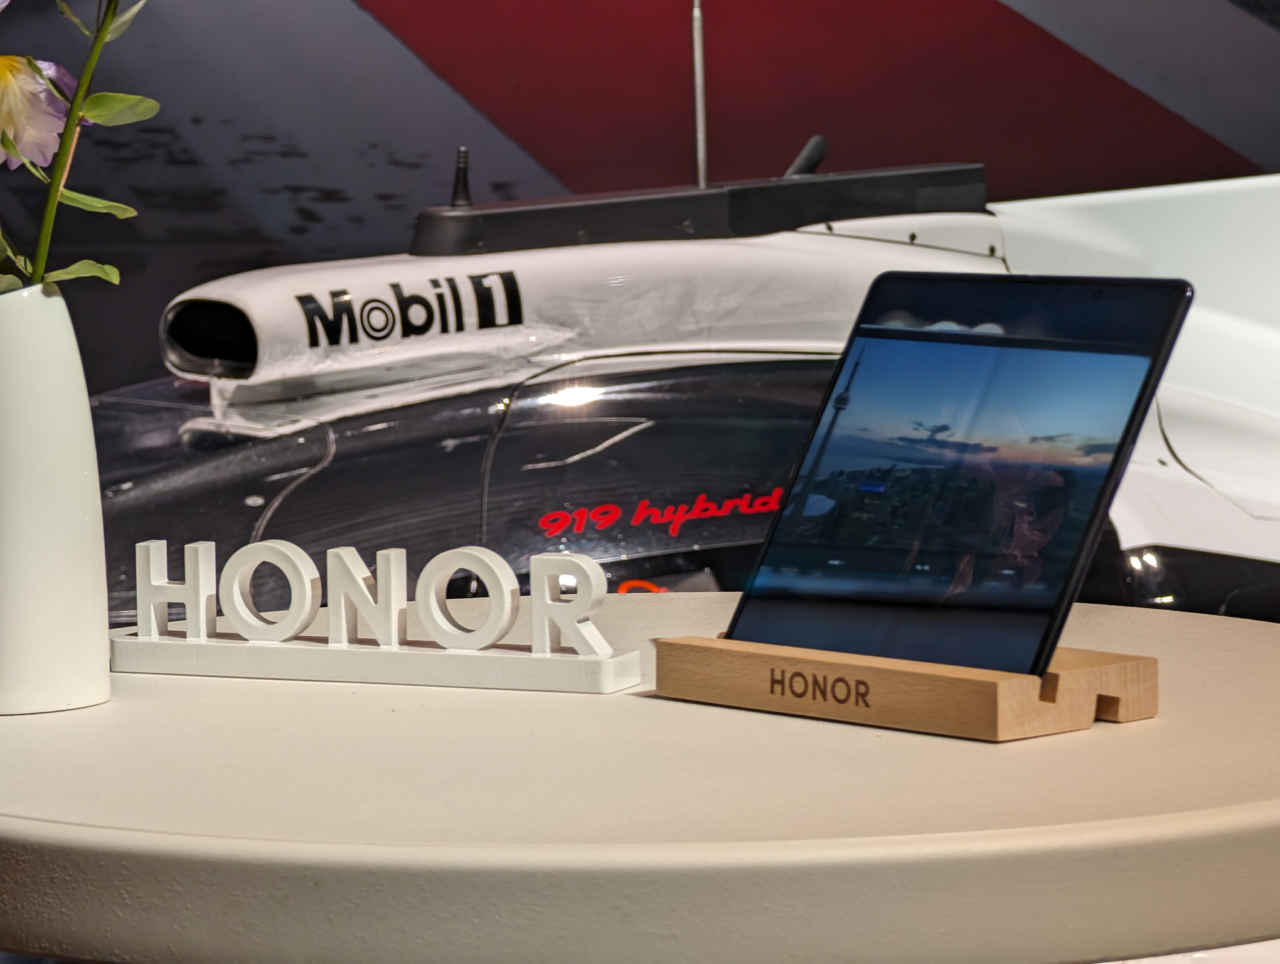 Tablet marki Honor stoi na stojaku z wygrawerowanym logo Honor na pierwszym planie, a w tle część białego pojazdu wyścigowego z napisami Mobil 1 i 919 hybrid.